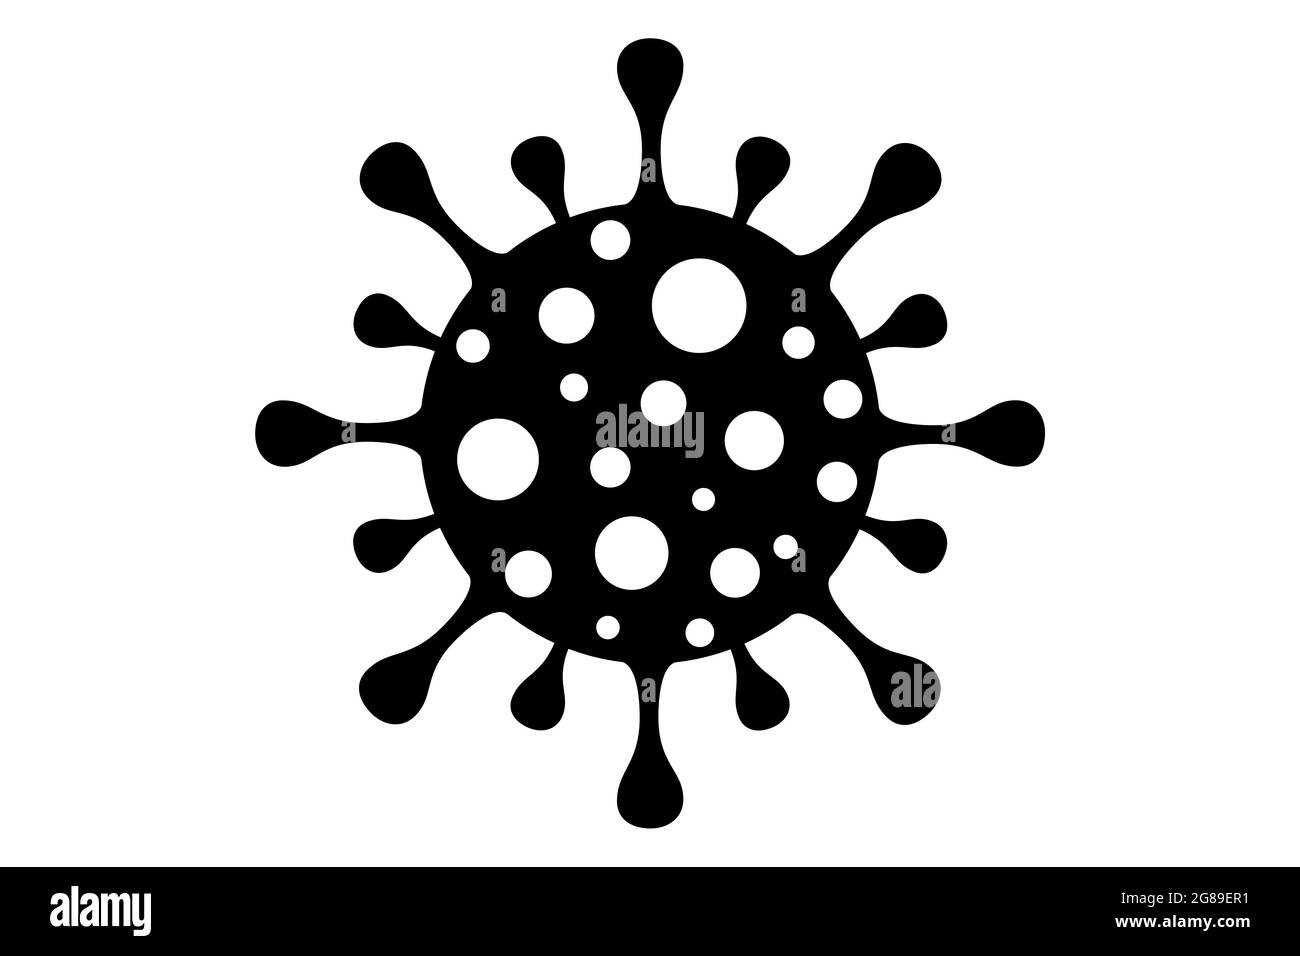 Coronavirus 2019-nCoV. Corona virus icona-design. Nero su sfondo bianco isolato. Infezione delle malattie respiratorie (focolaio di malattia). Pandemia influenzale. Foto Stock